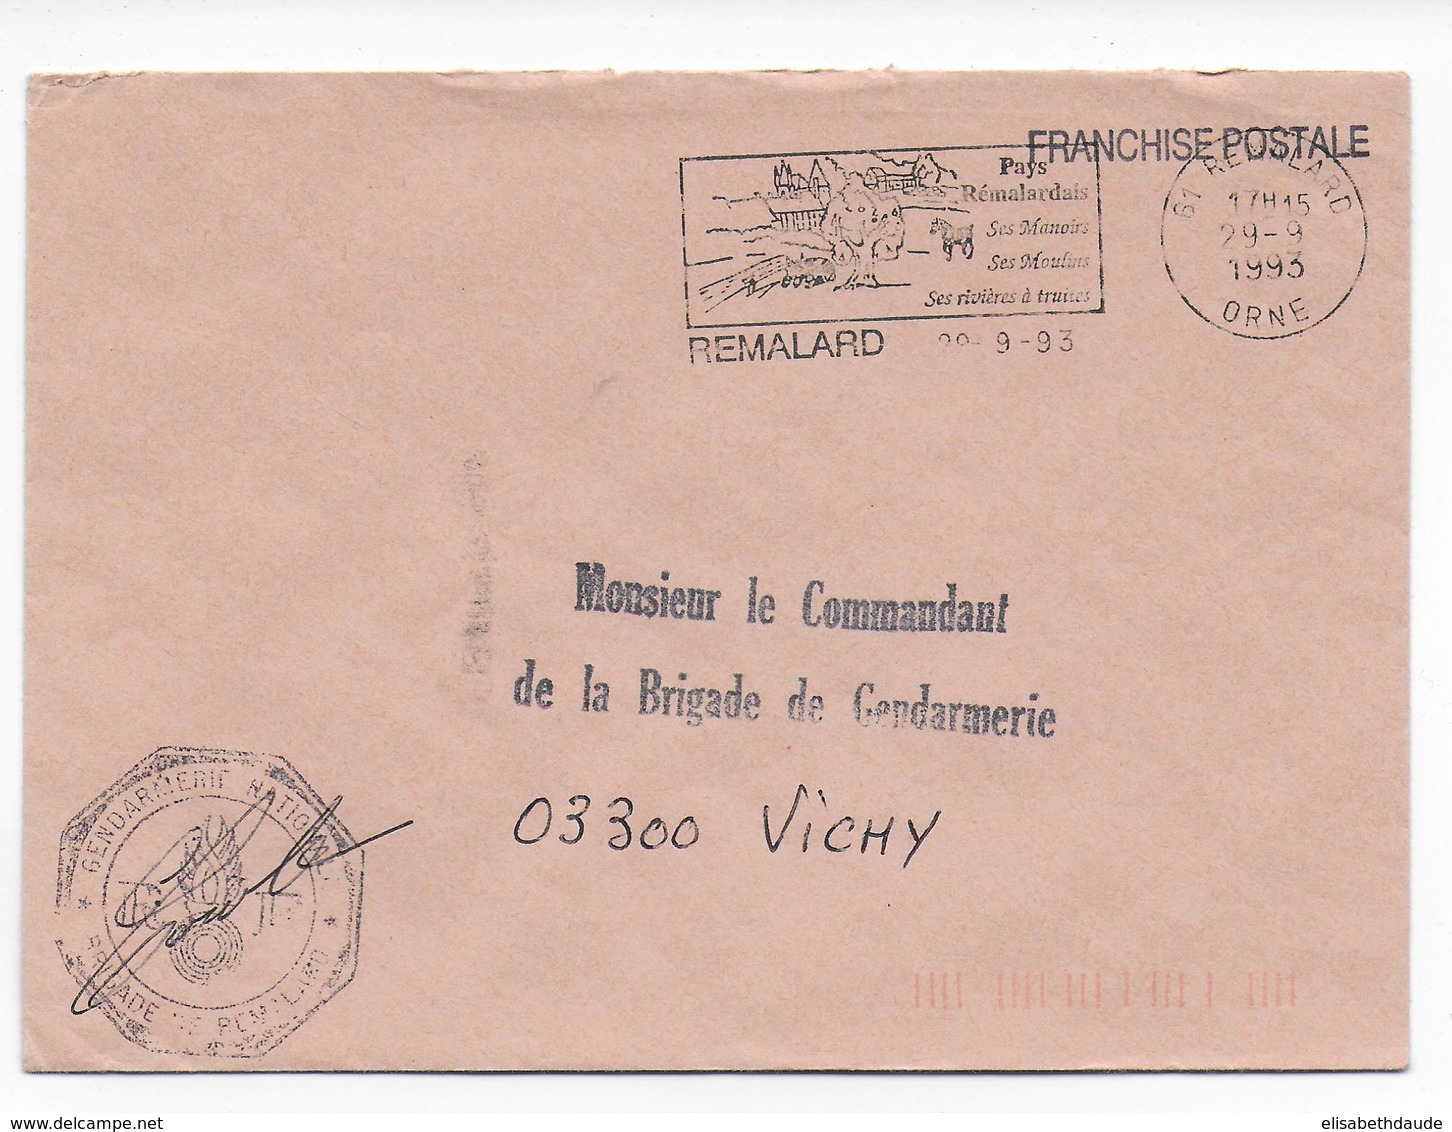 1993 - GENDARMERIE - ENVELOPPE En FRANCHISE De REMALARD (ORNE) - Cachets Militaires A Partir De 1900 (hors Guerres)